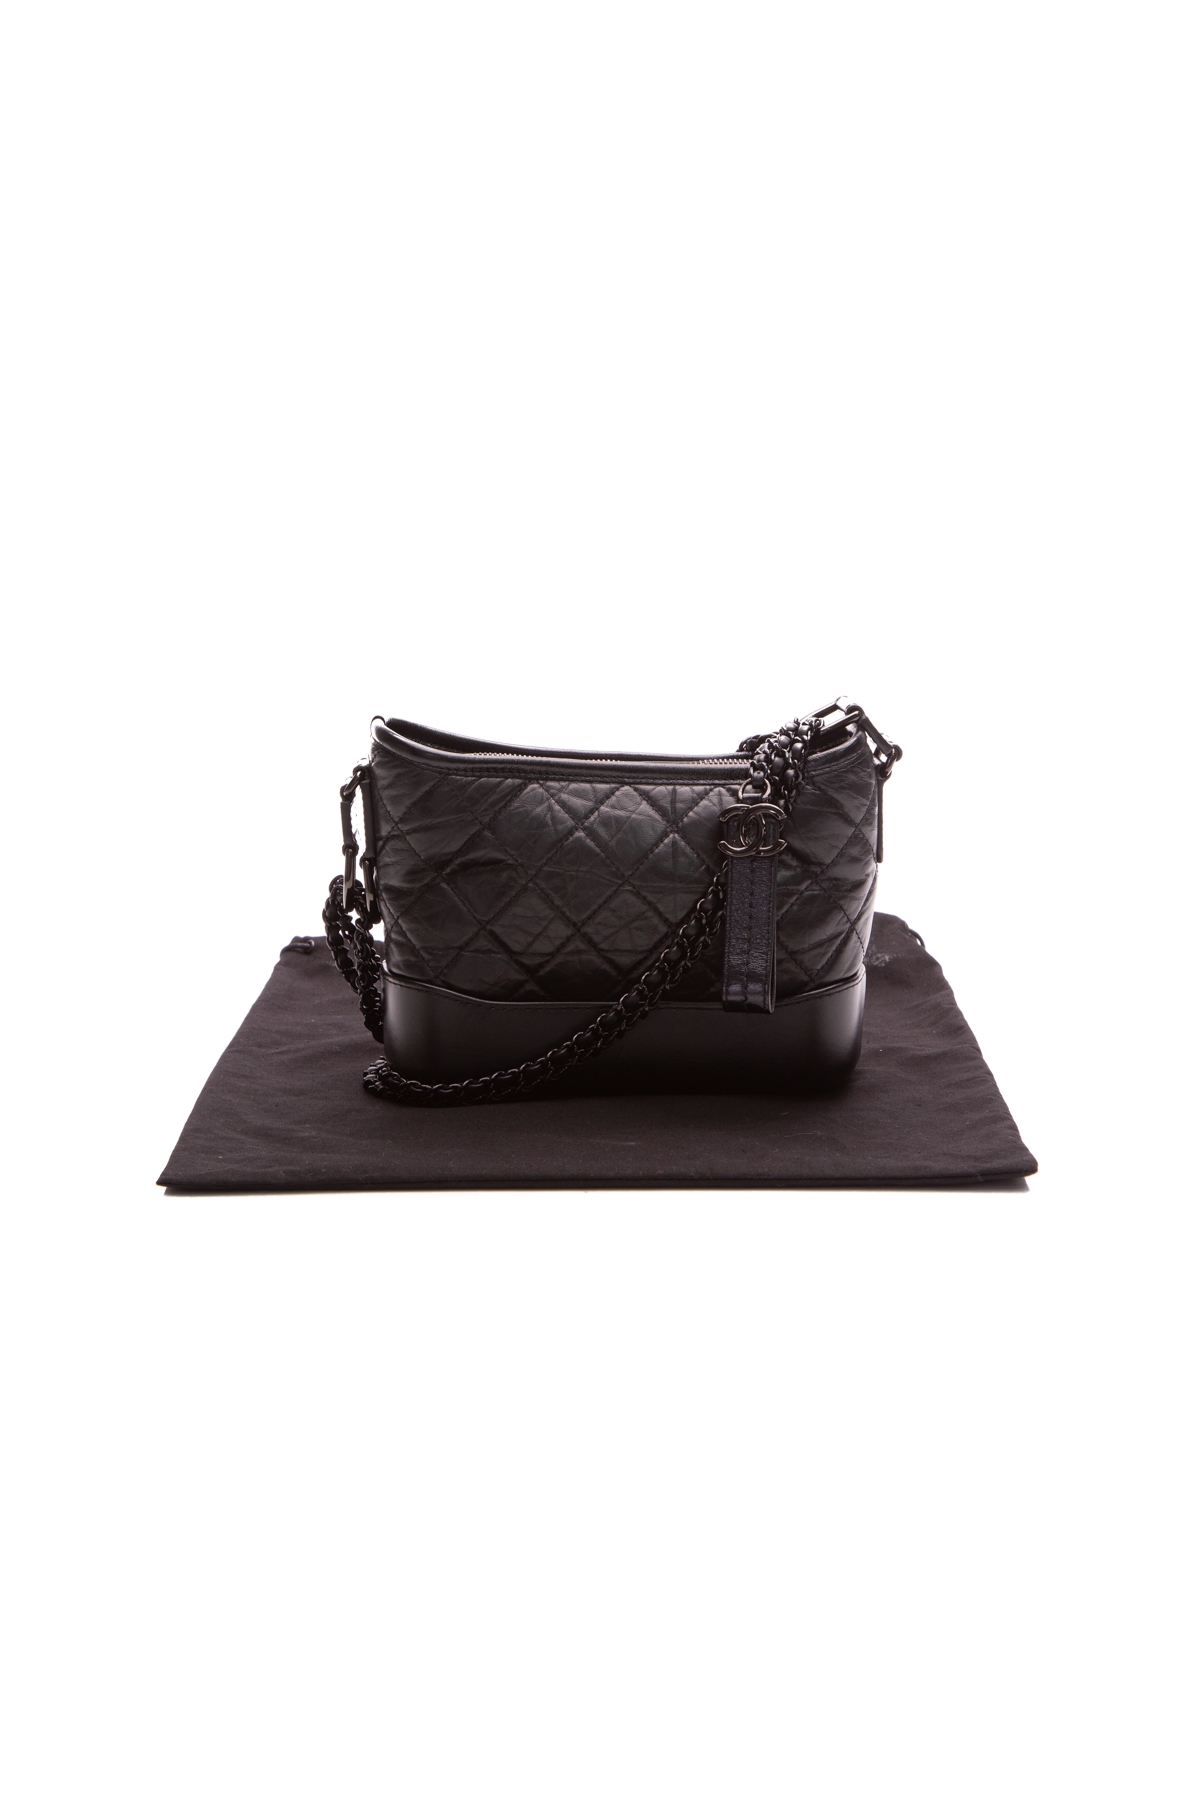 Chanel Gabrielle Clutch w/ Chain - Metallic Crossbody Bags